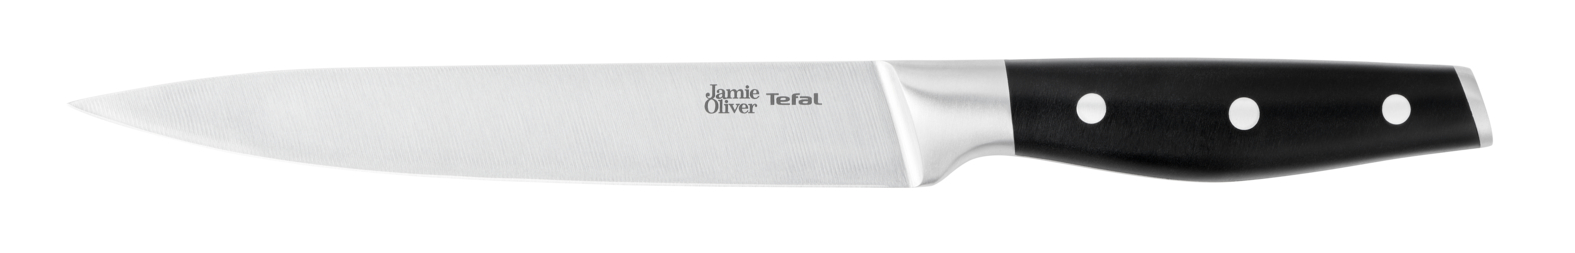 Универсальный нож Jamie Oliver 20 cм K2670244